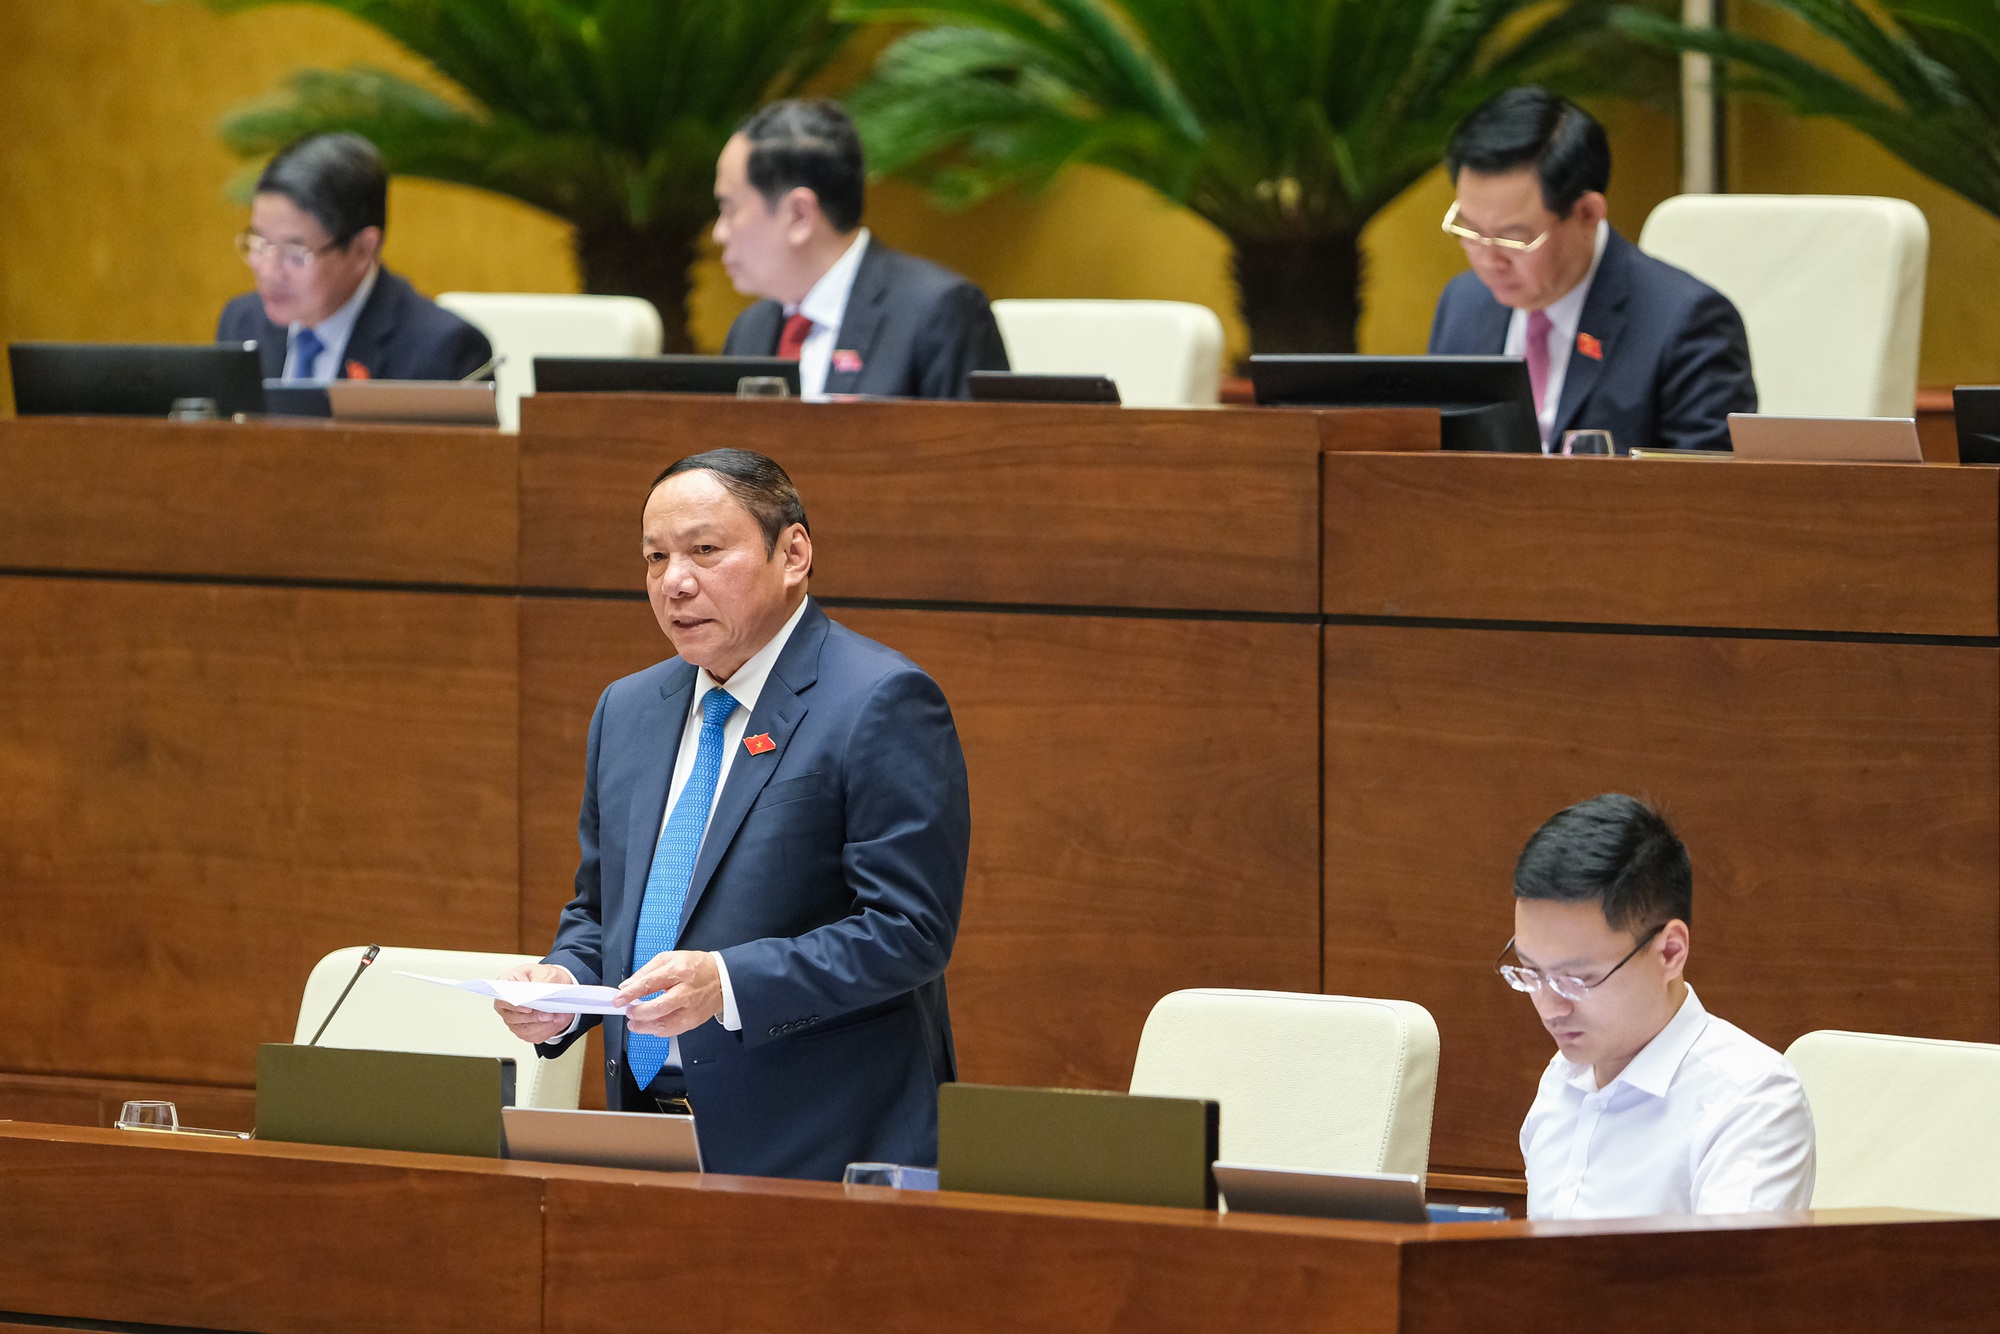 Bộ trưởng Nguyễn Văn Hùng phê phán trò chơi team building phản cảm và sẽ kiểm tra, xử lý nghiêm - Ảnh 1.